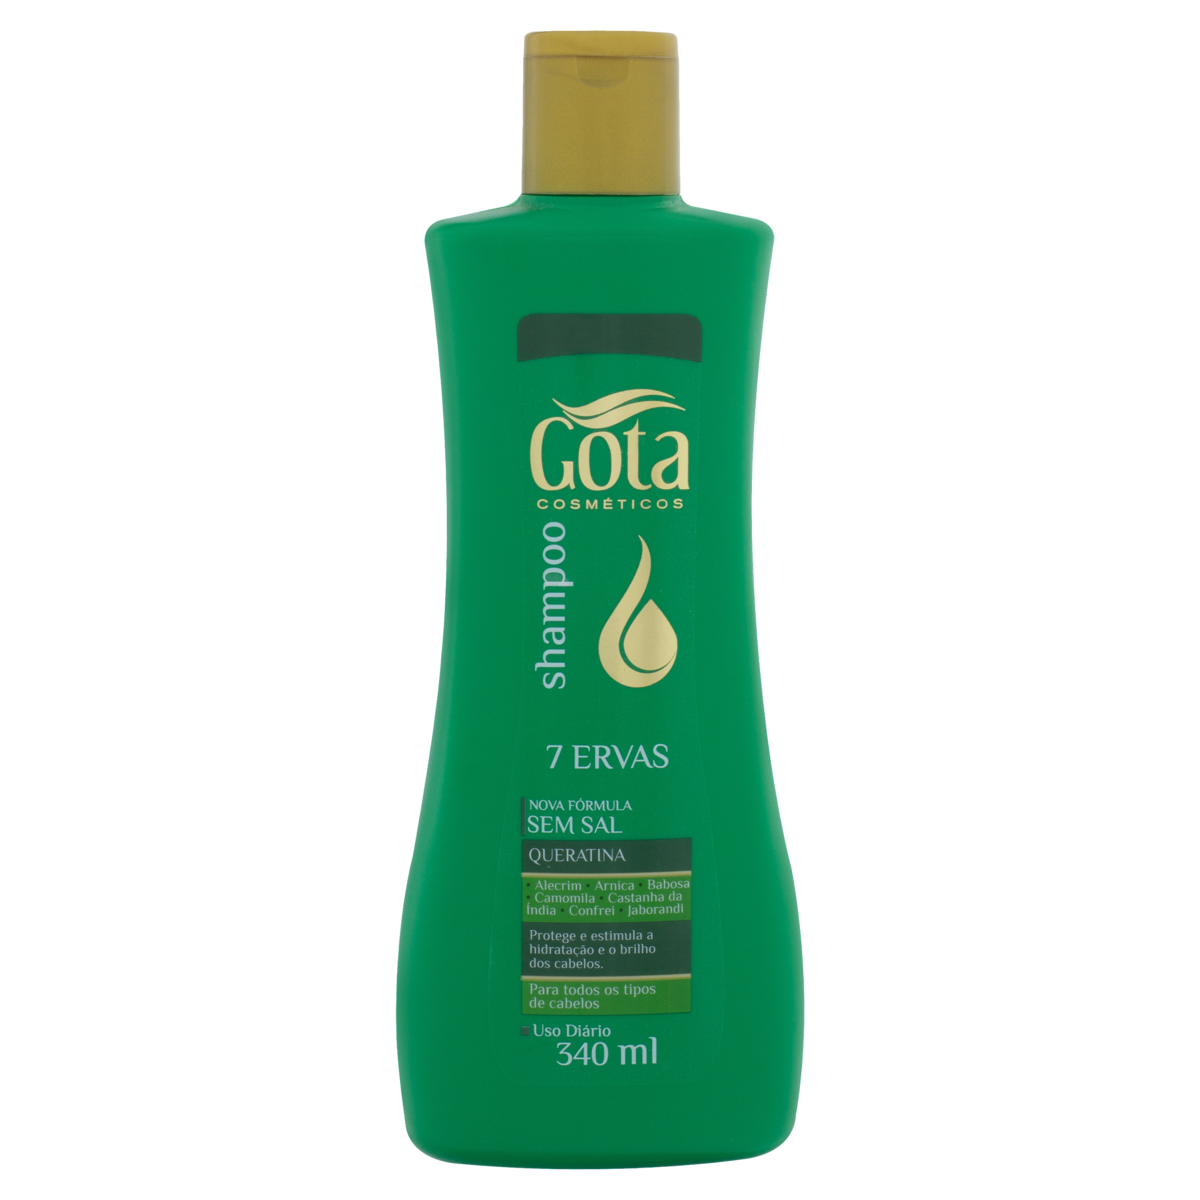 Shampoo OX Cosméticos Nutrição Fortalecedora Bisnaga 400ml